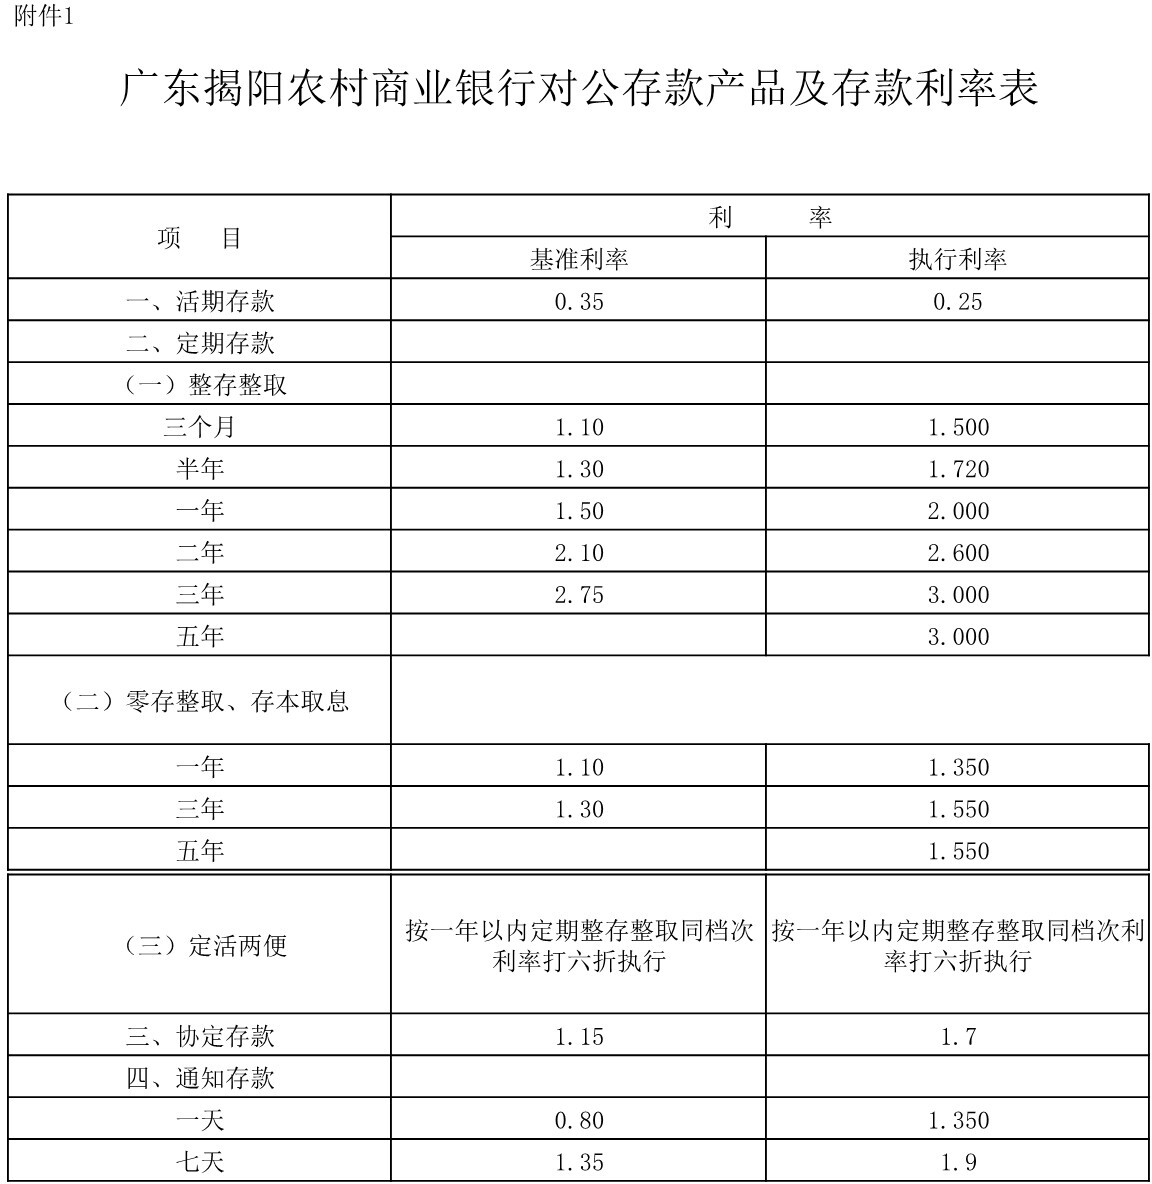 广东揭阳农村商业银行对公存款产品及存款利率表 (垂直拼接).jpg